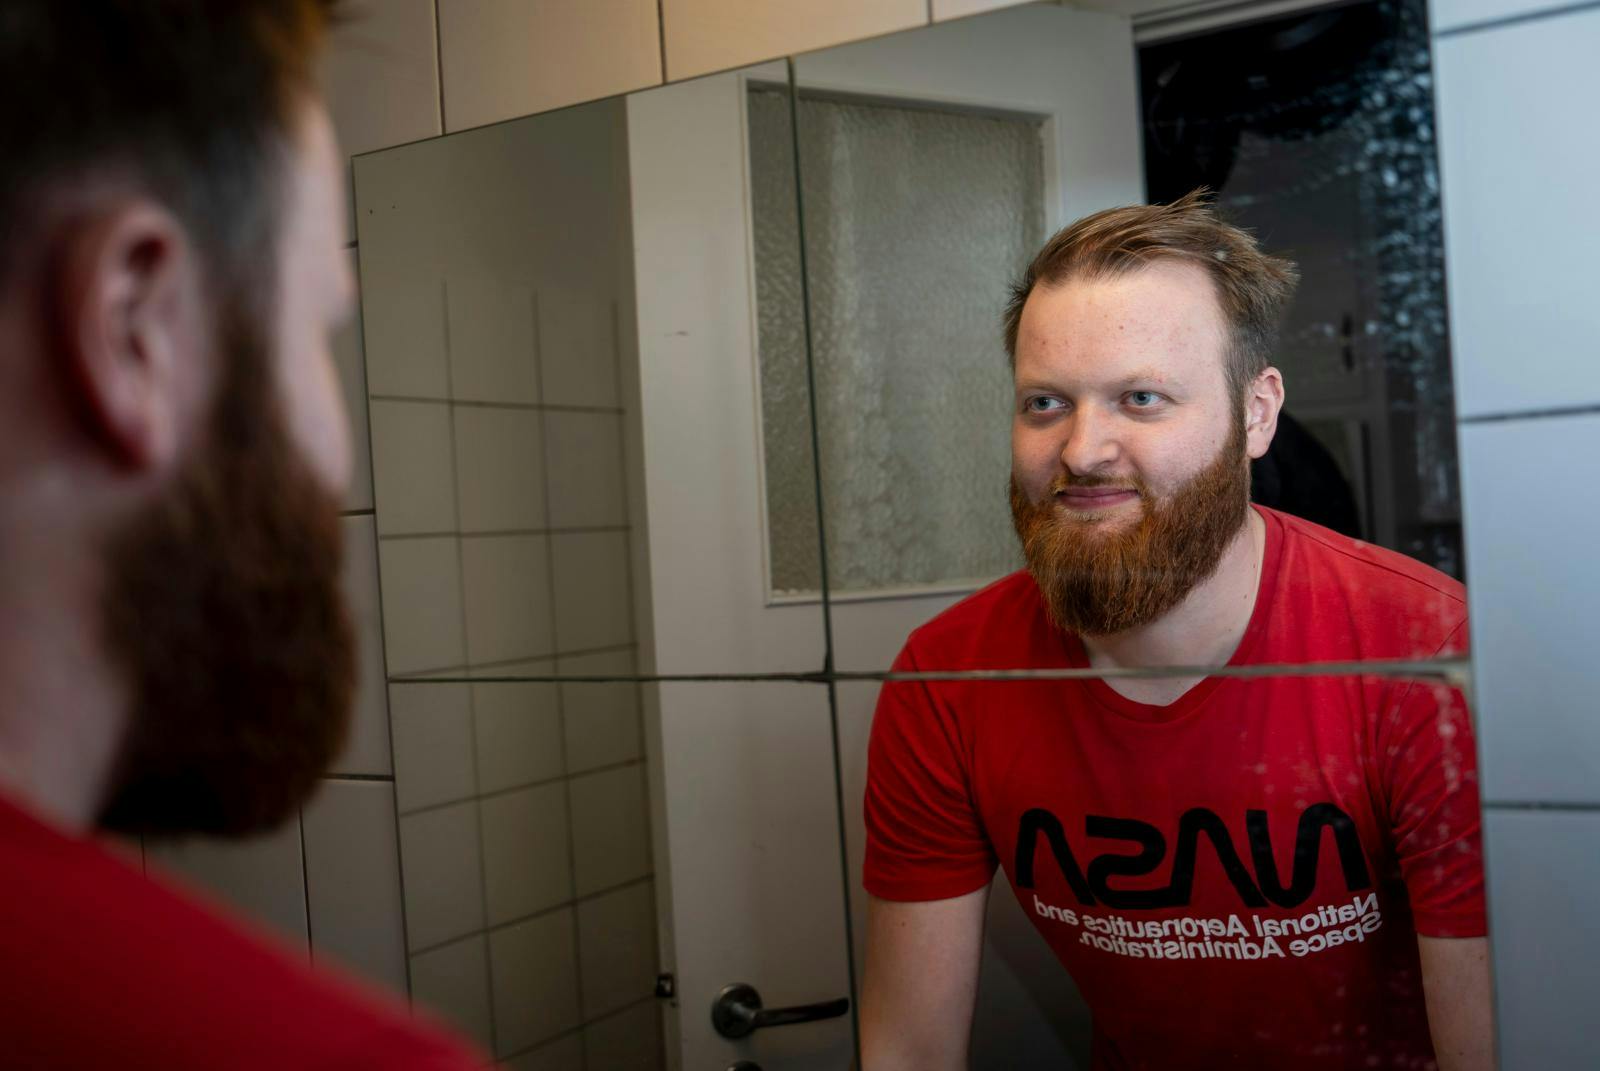 Selv om Rasmus Bruun, 26, fra TV 2’s ”Kærlighed hvor kragerne vender” har en sjælden genfejl, som bl.a. gør, at han har tyndt hår, så fejler skægvæksten ikke noget